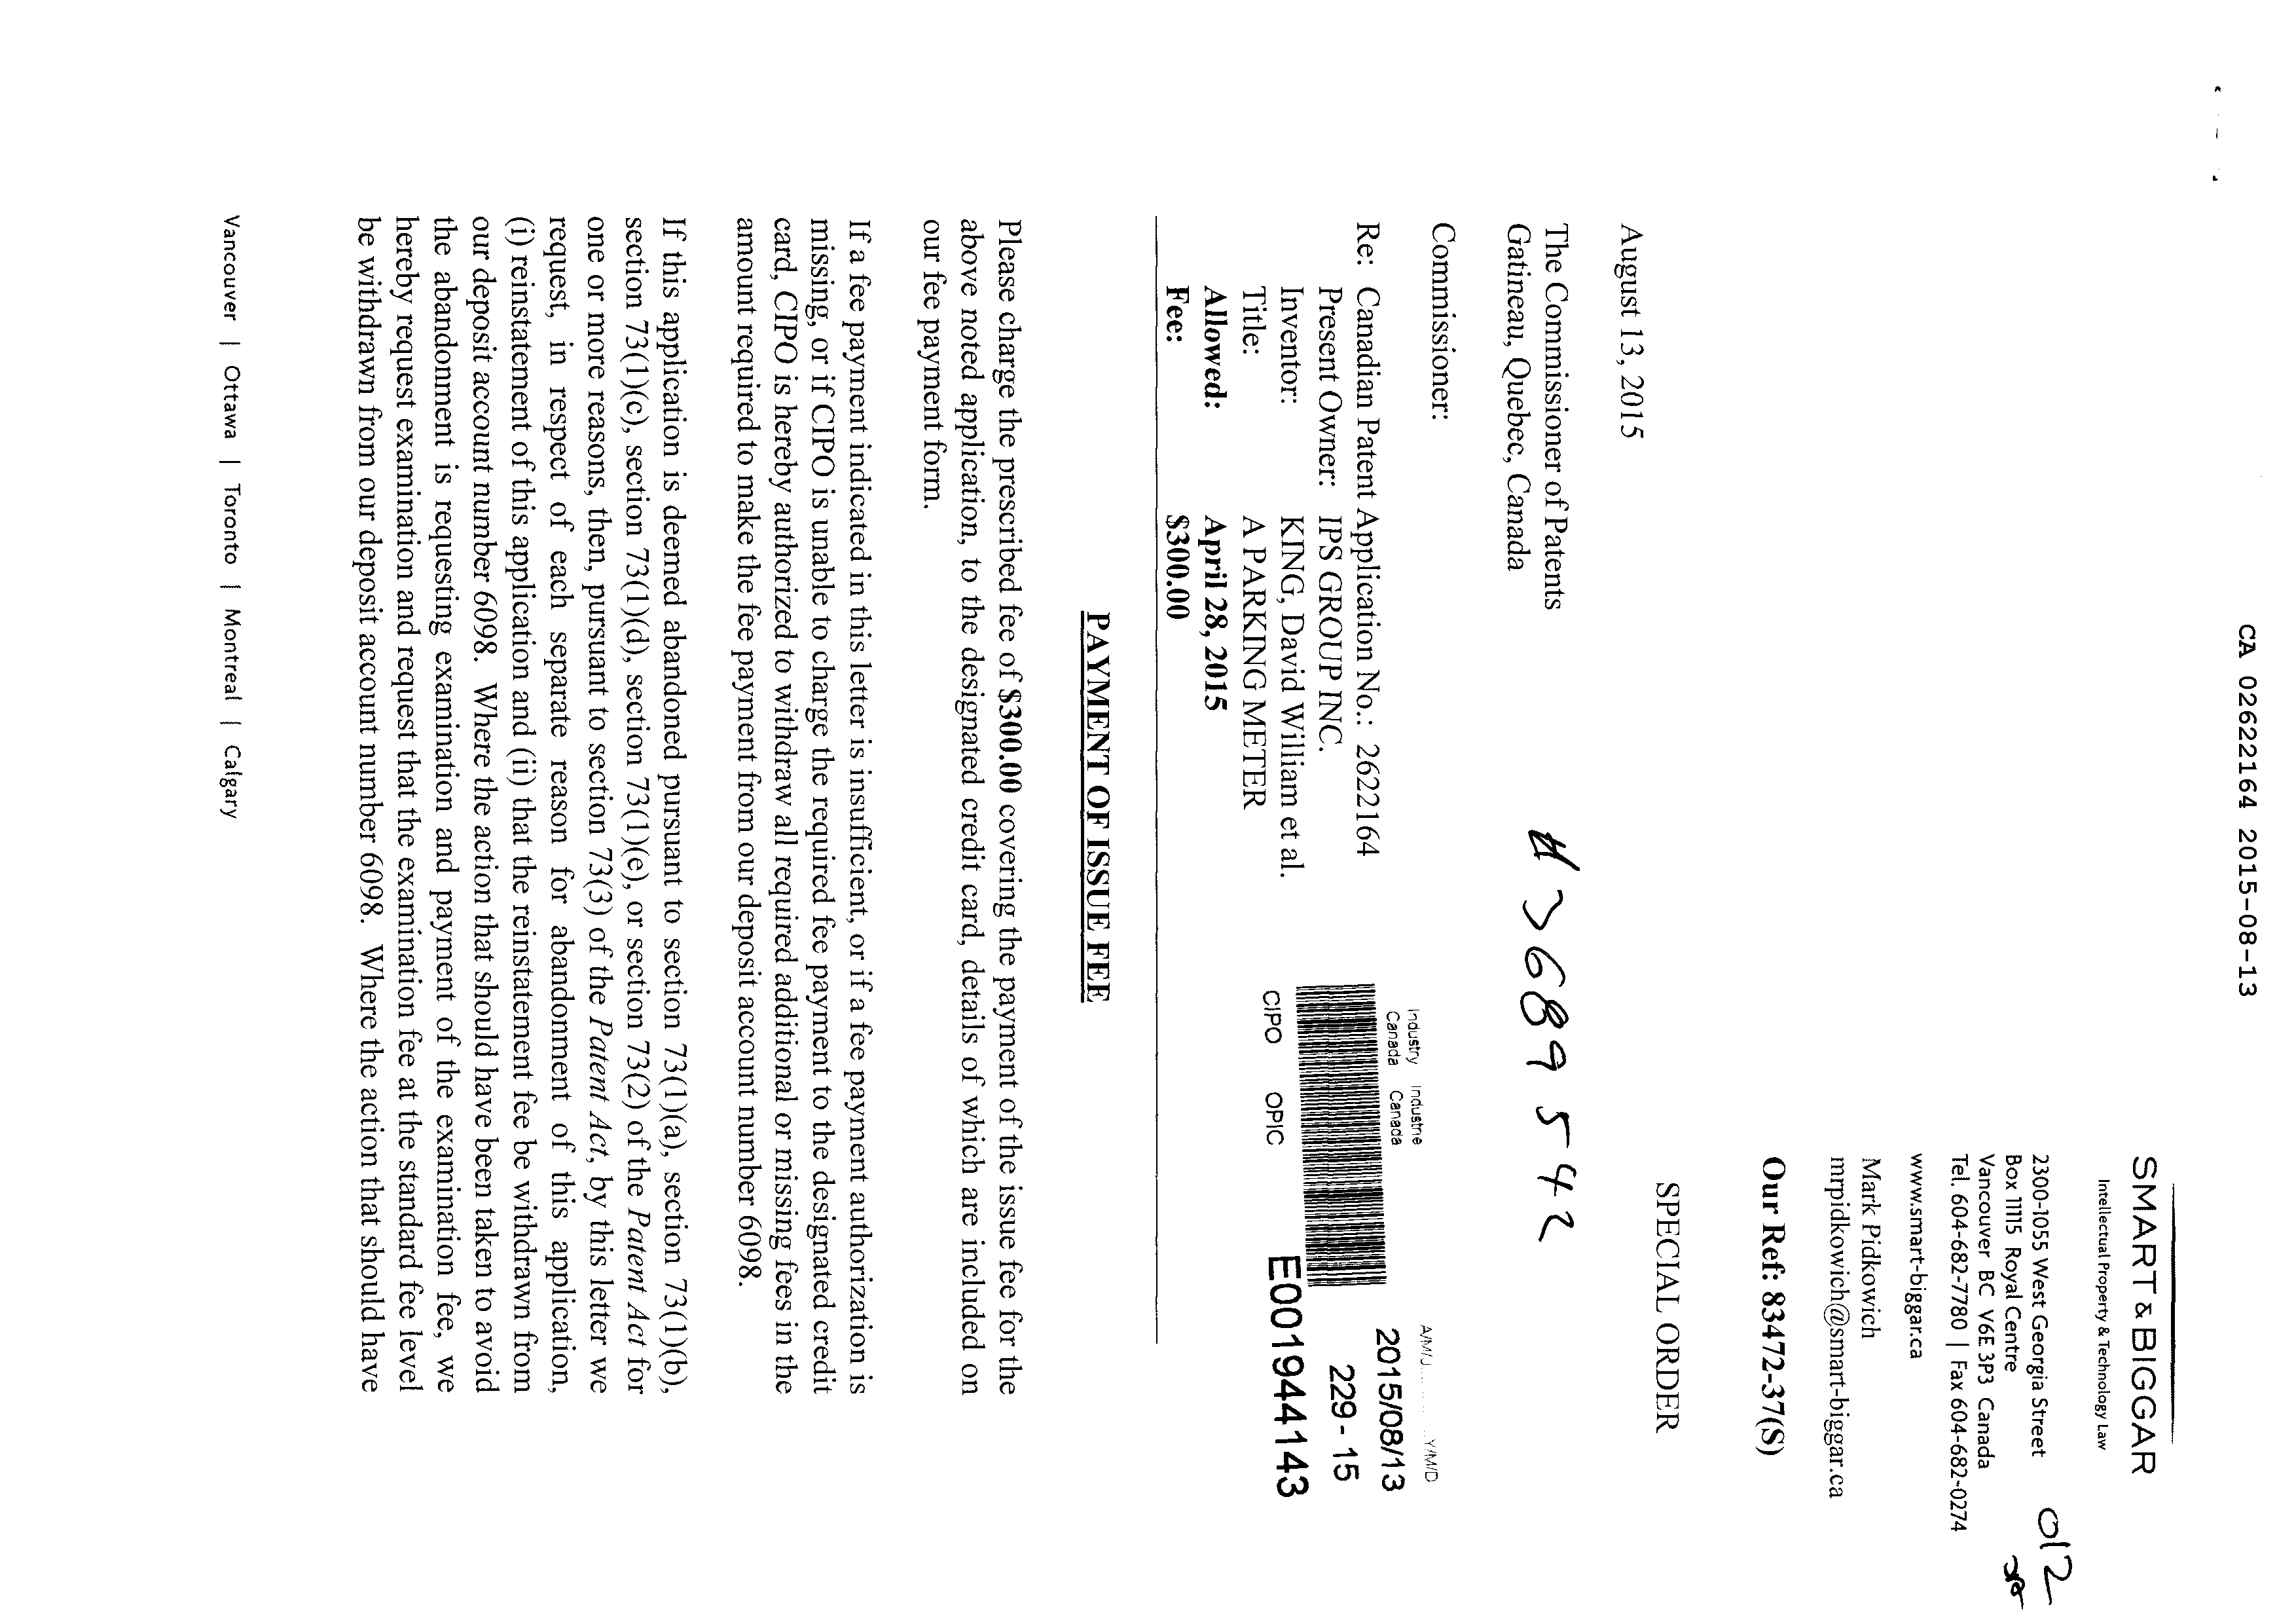 Document de brevet canadien 2622164. Correspondance 20141213. Image 1 de 2